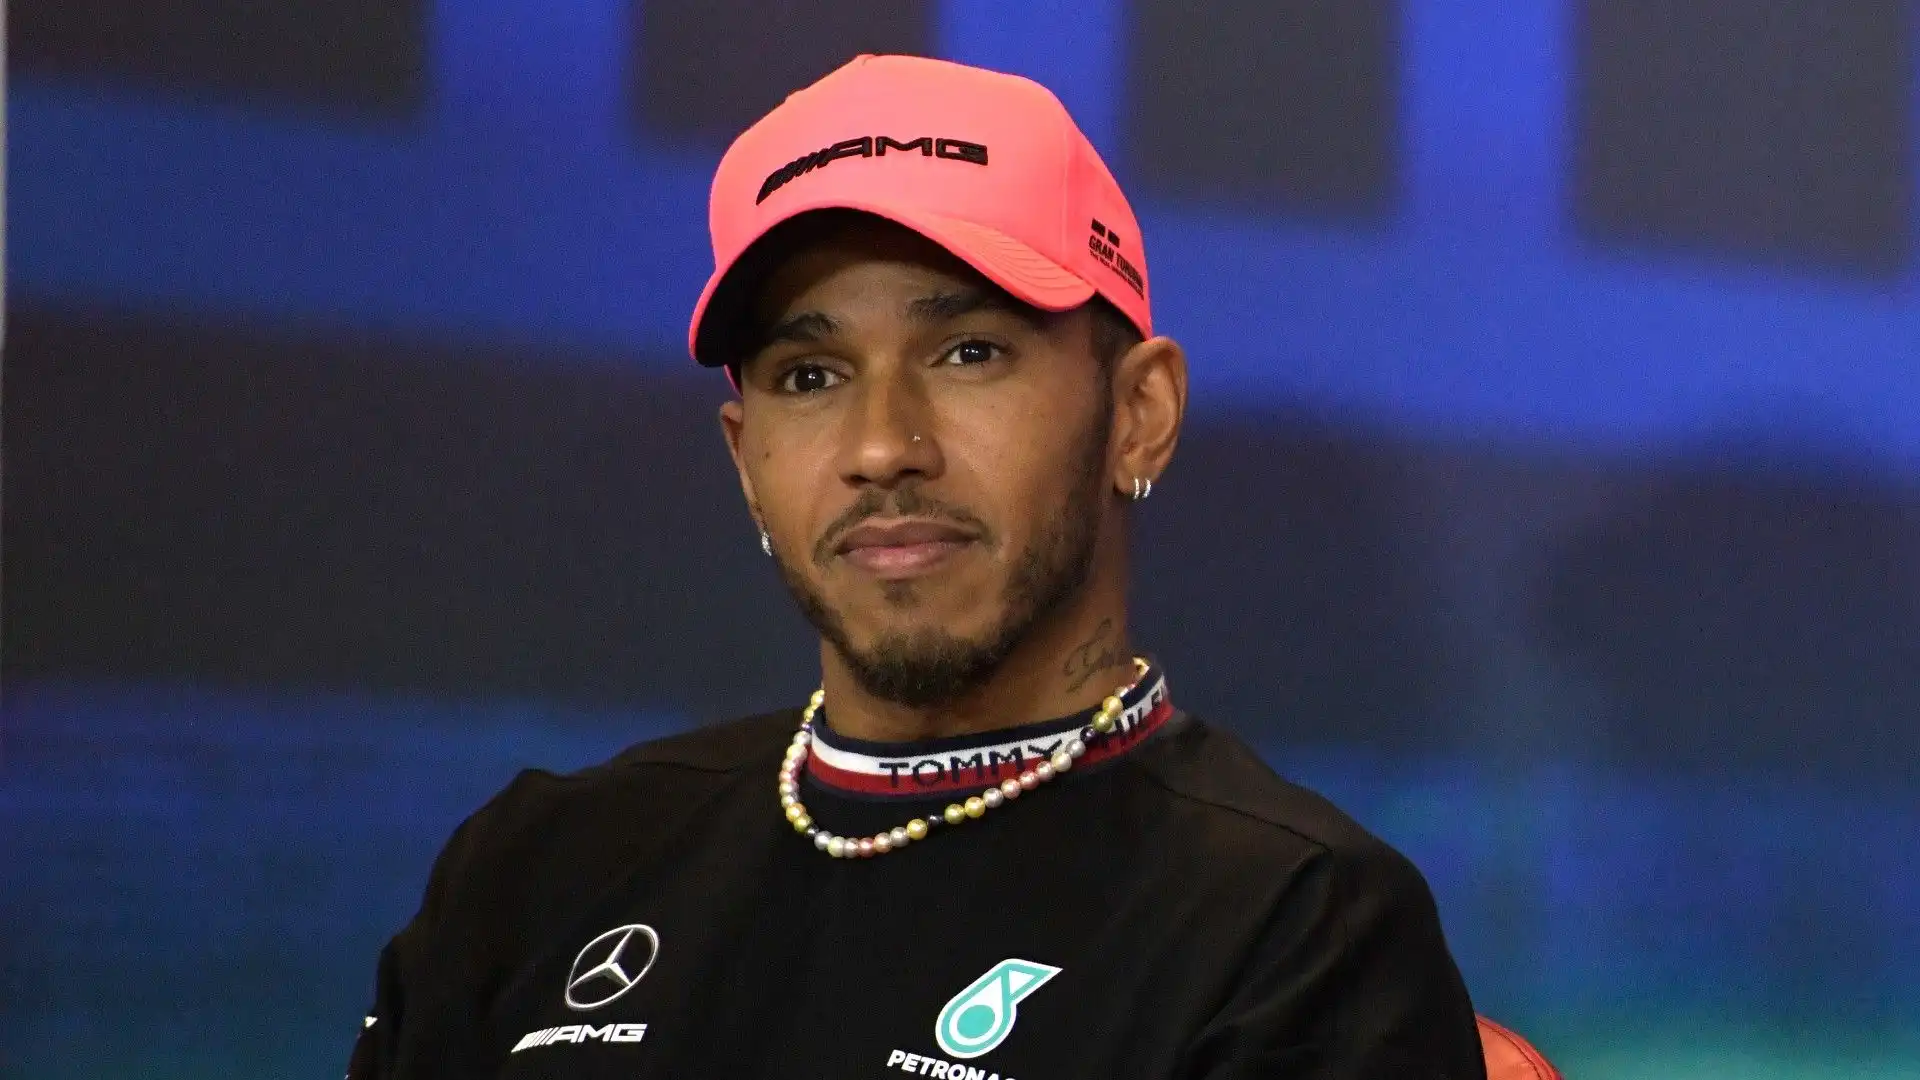 2- Lewis Hamilton, Mercedes, 55 milioni di dollari